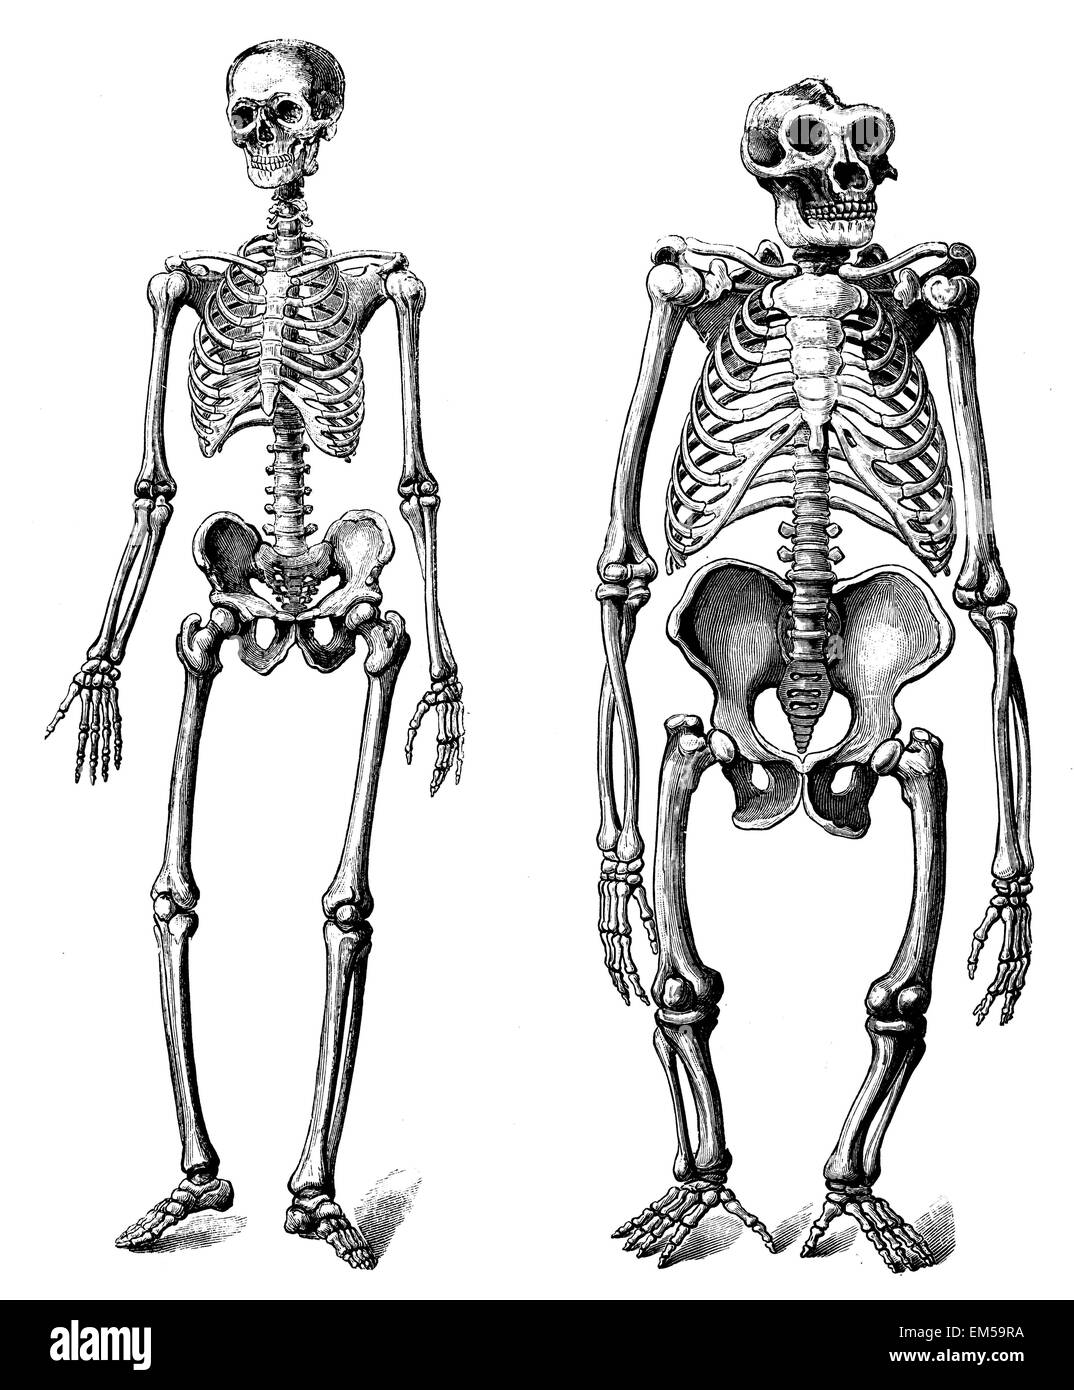 Skeleton of the person  Skeleton of the Gorilla Stock Photo